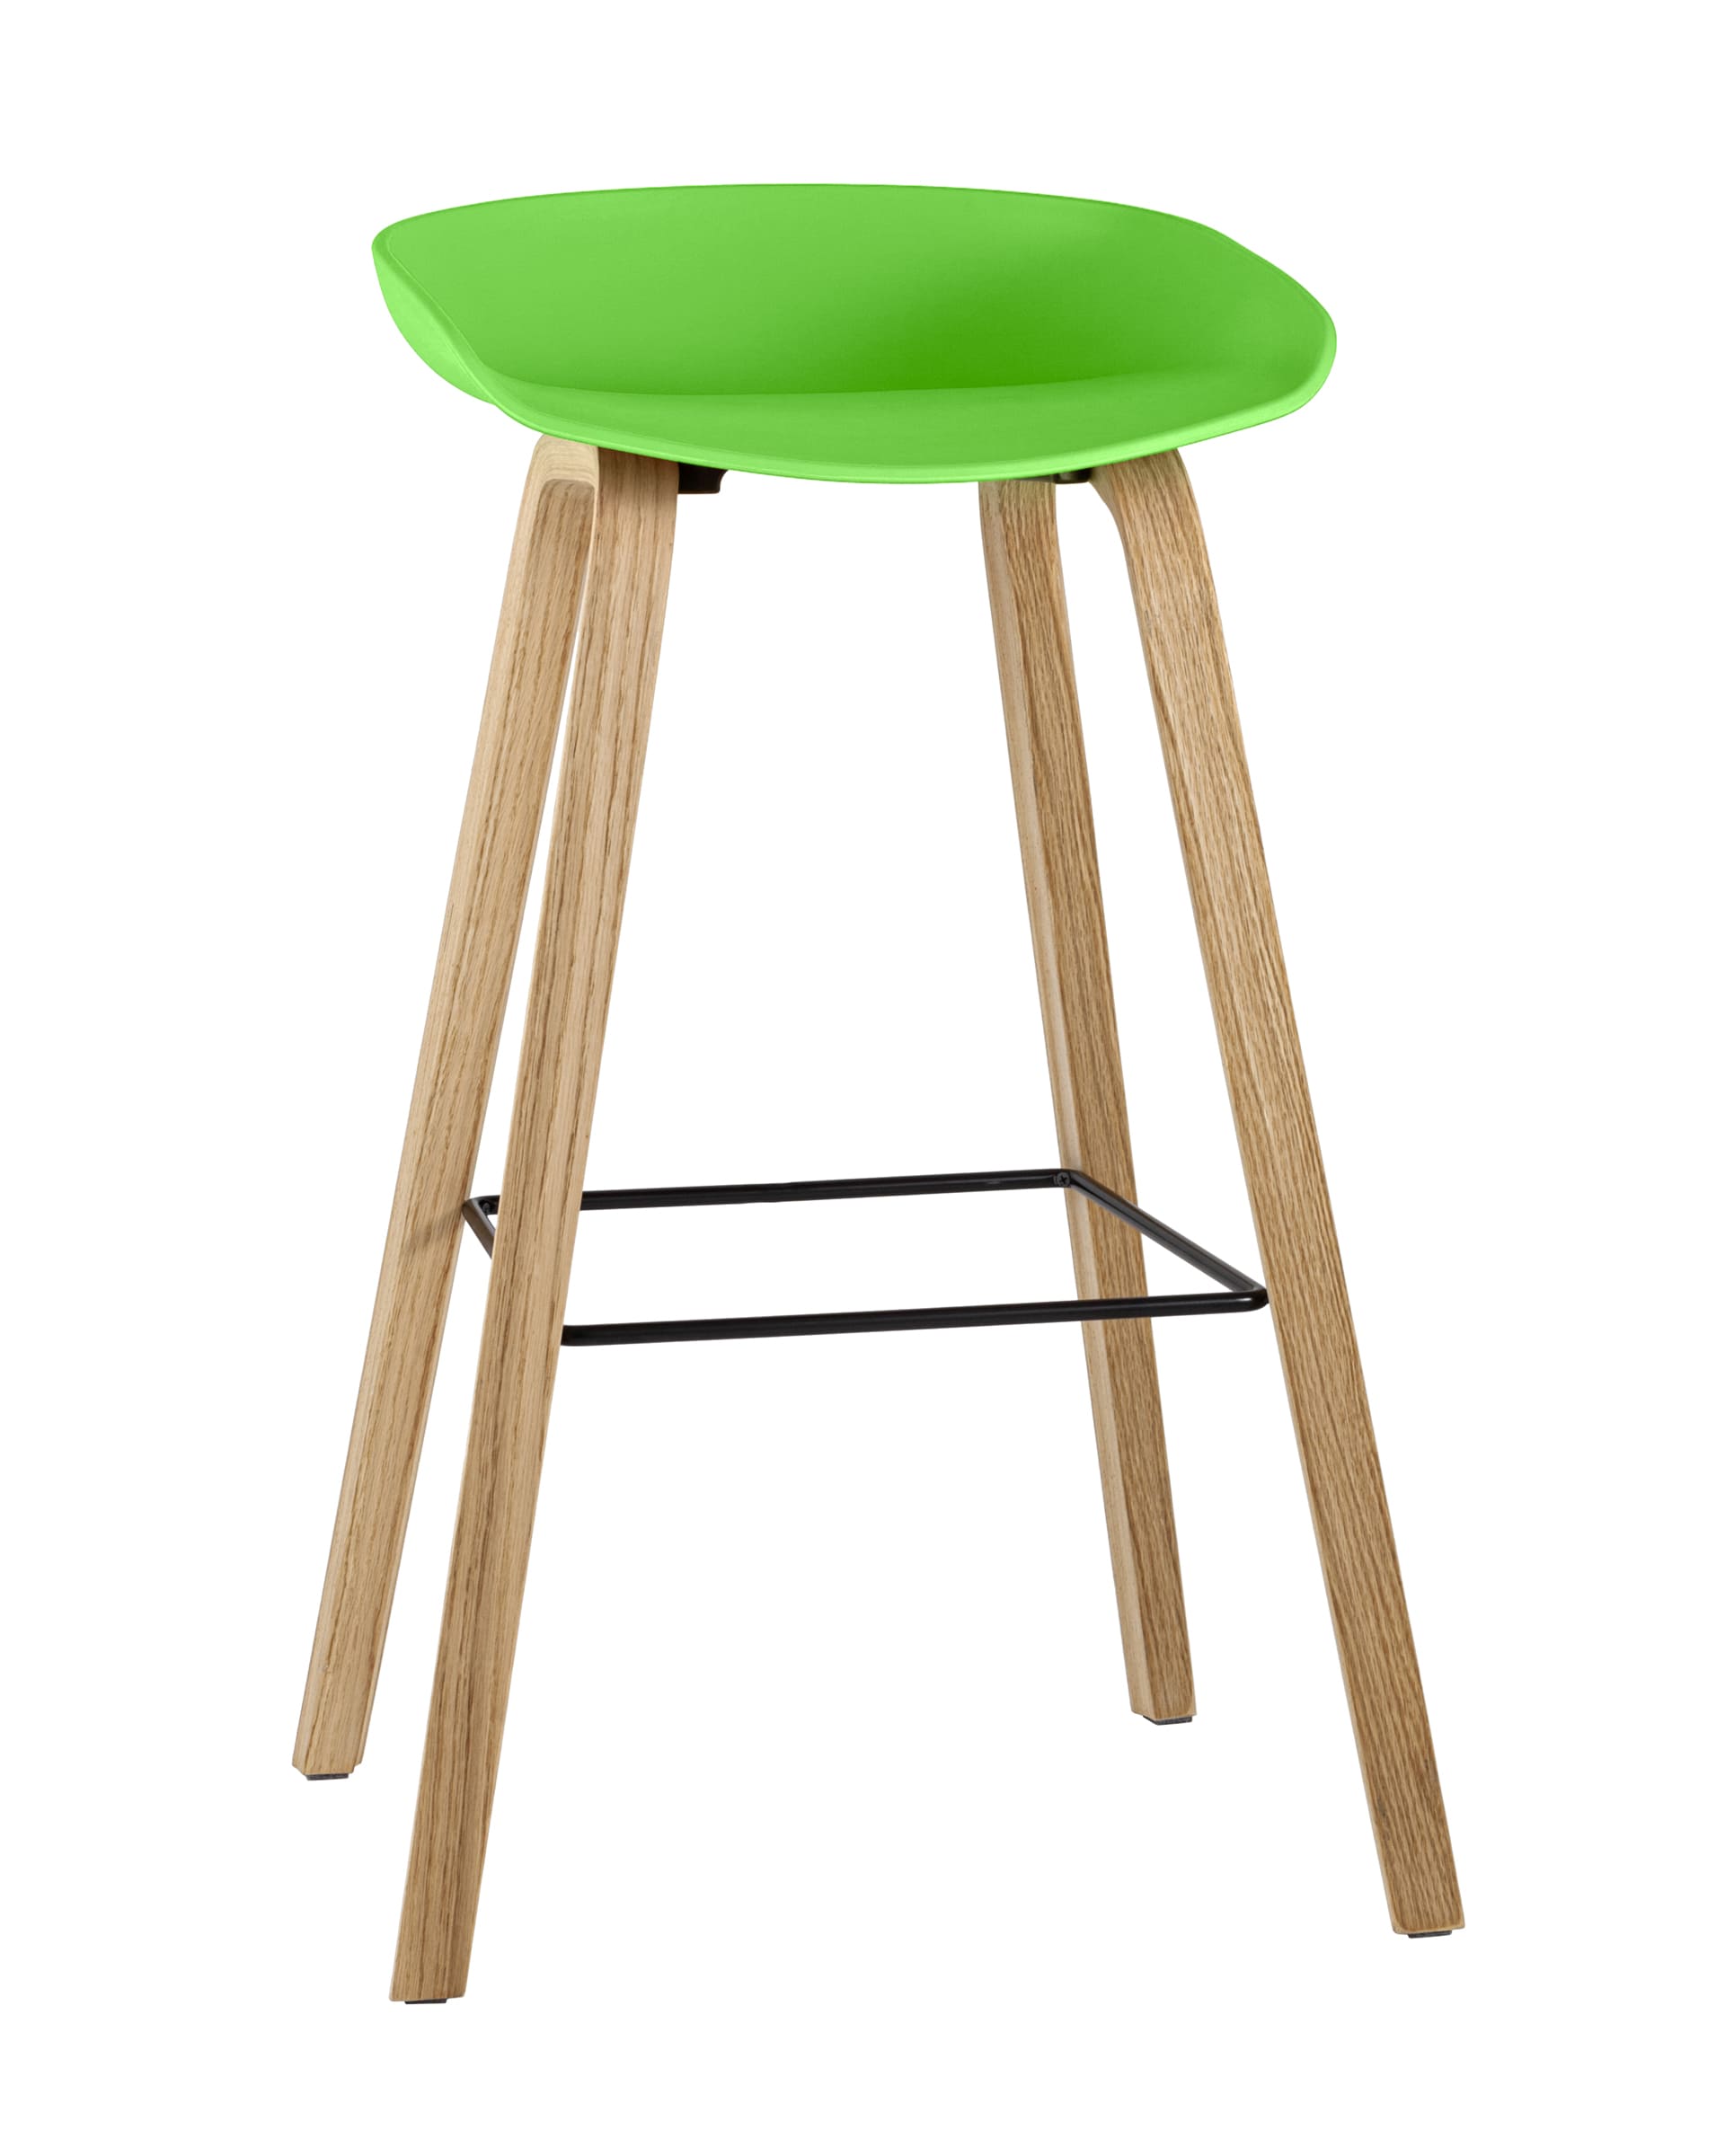 Барный стул Libra зеленый, пластик, ножки оттенка натурального дерева